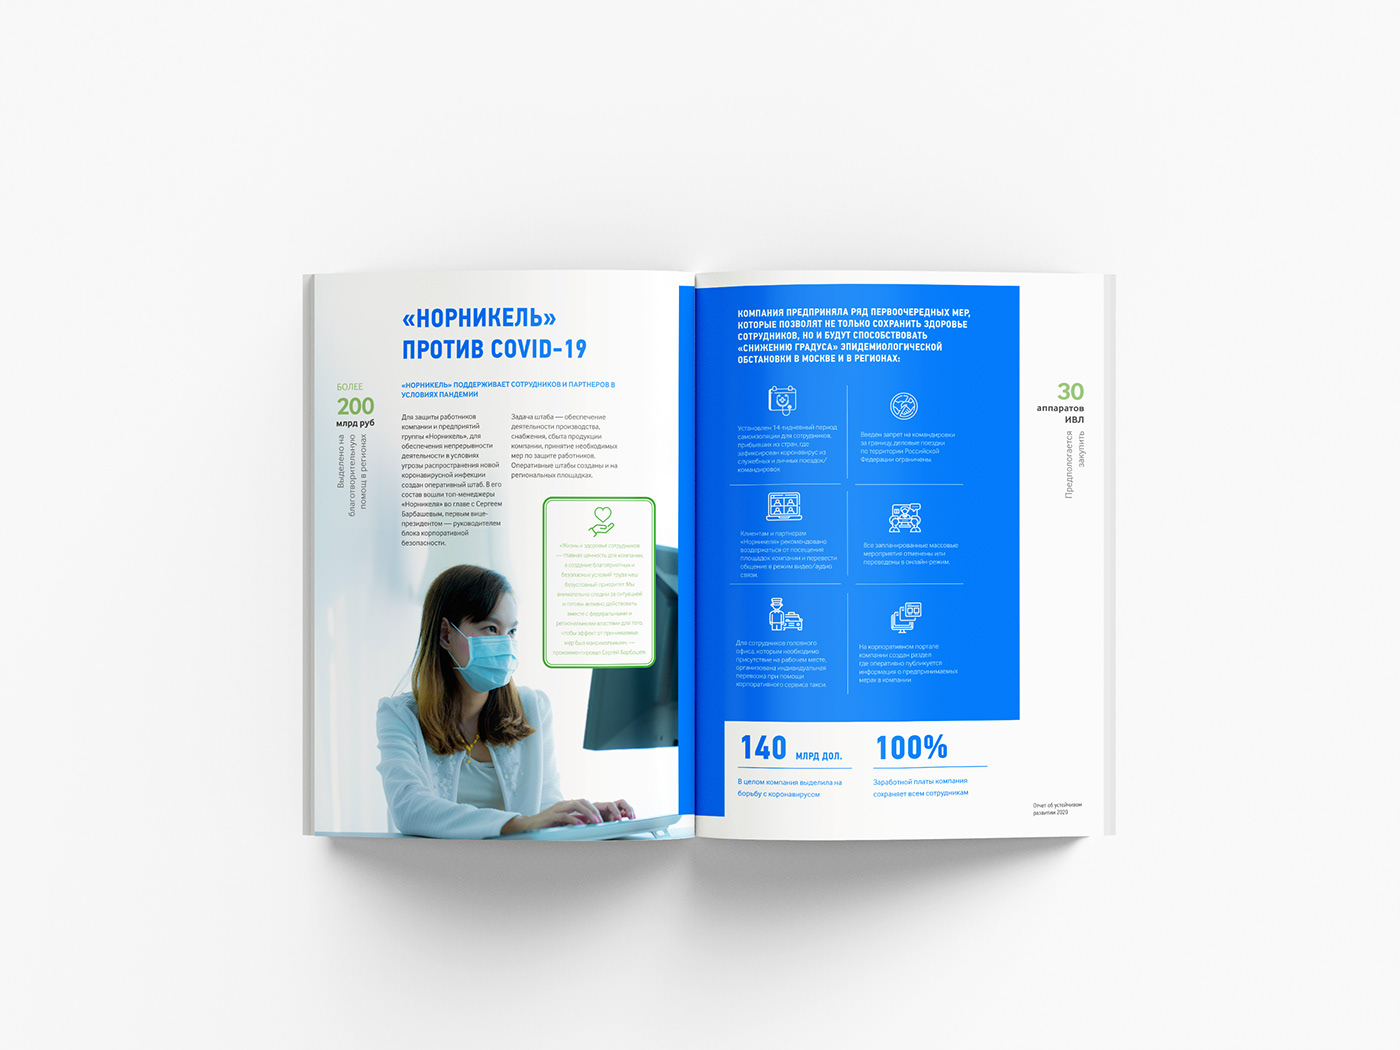 anual report design graphic design  vector visual верстка годовой отчет графика графический дизайн иллюстрация полиграфия